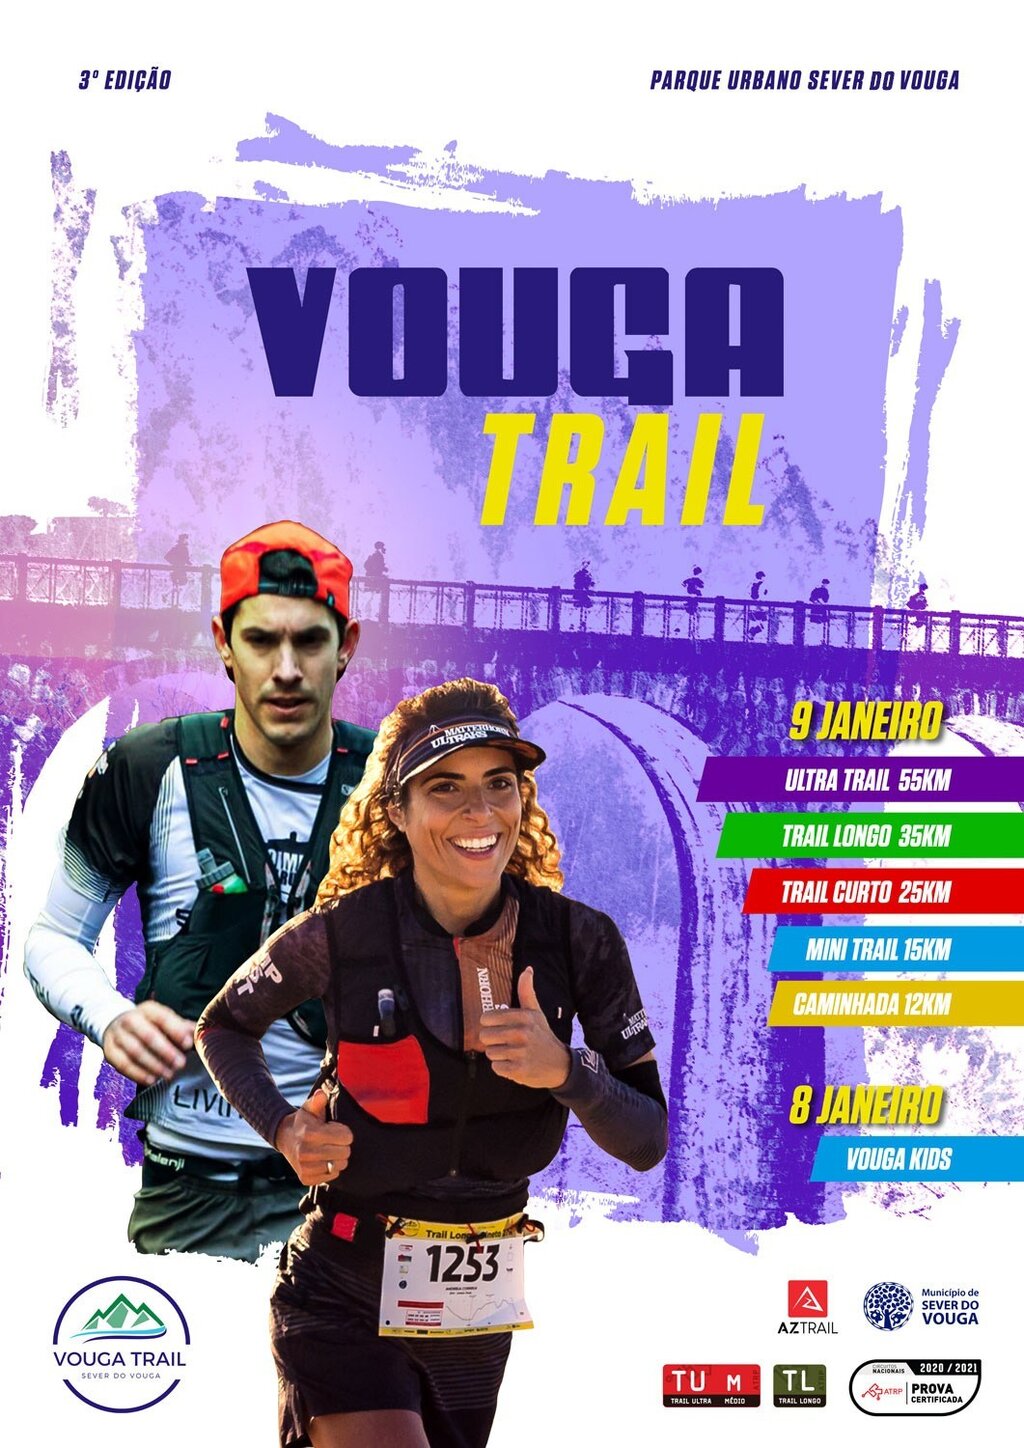 8 e 9 Janeiro - Vouga Trail